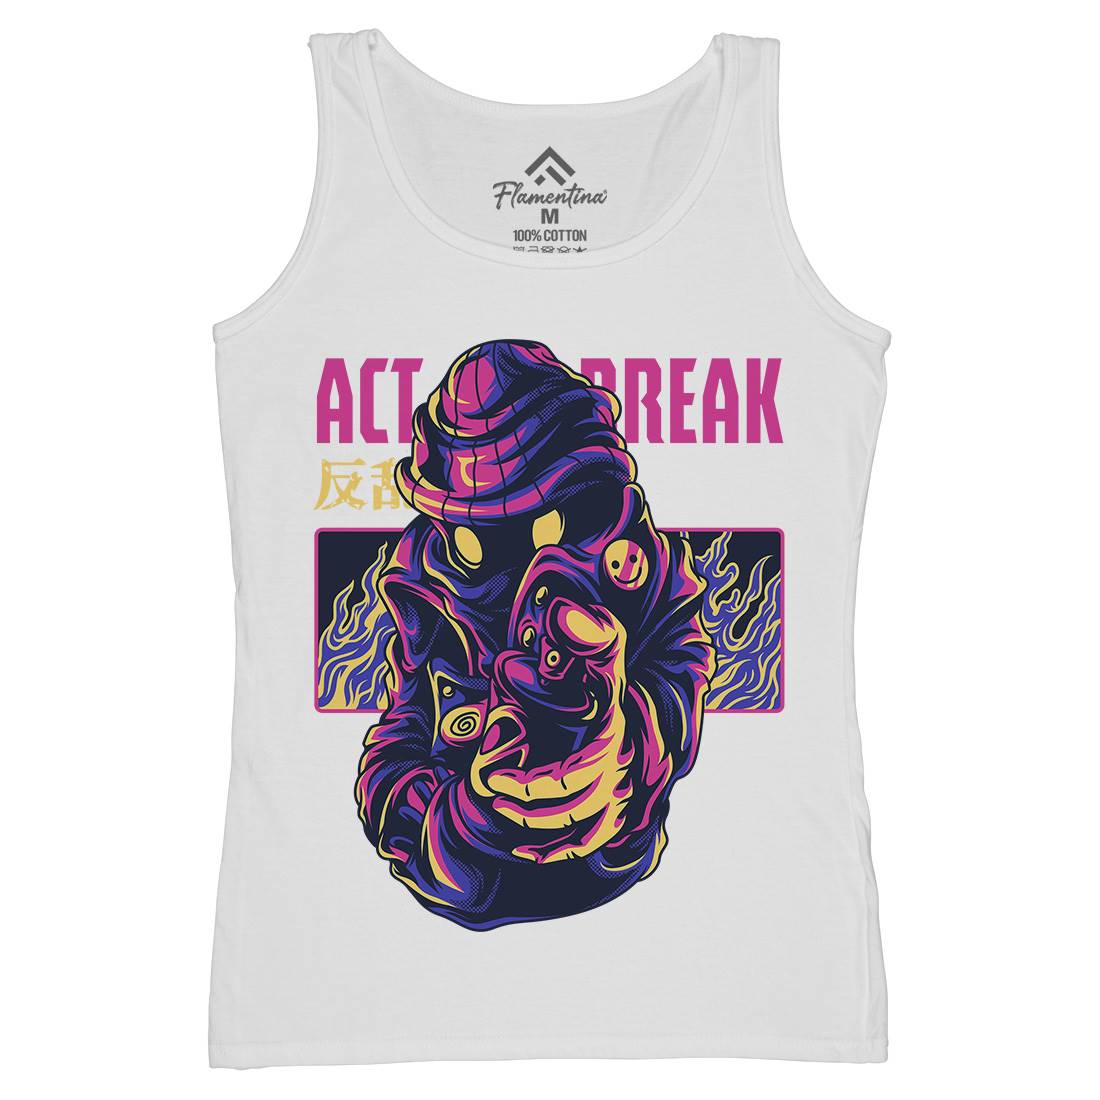 Act Break Womens Organic Tank Top Vest Graffiti D700